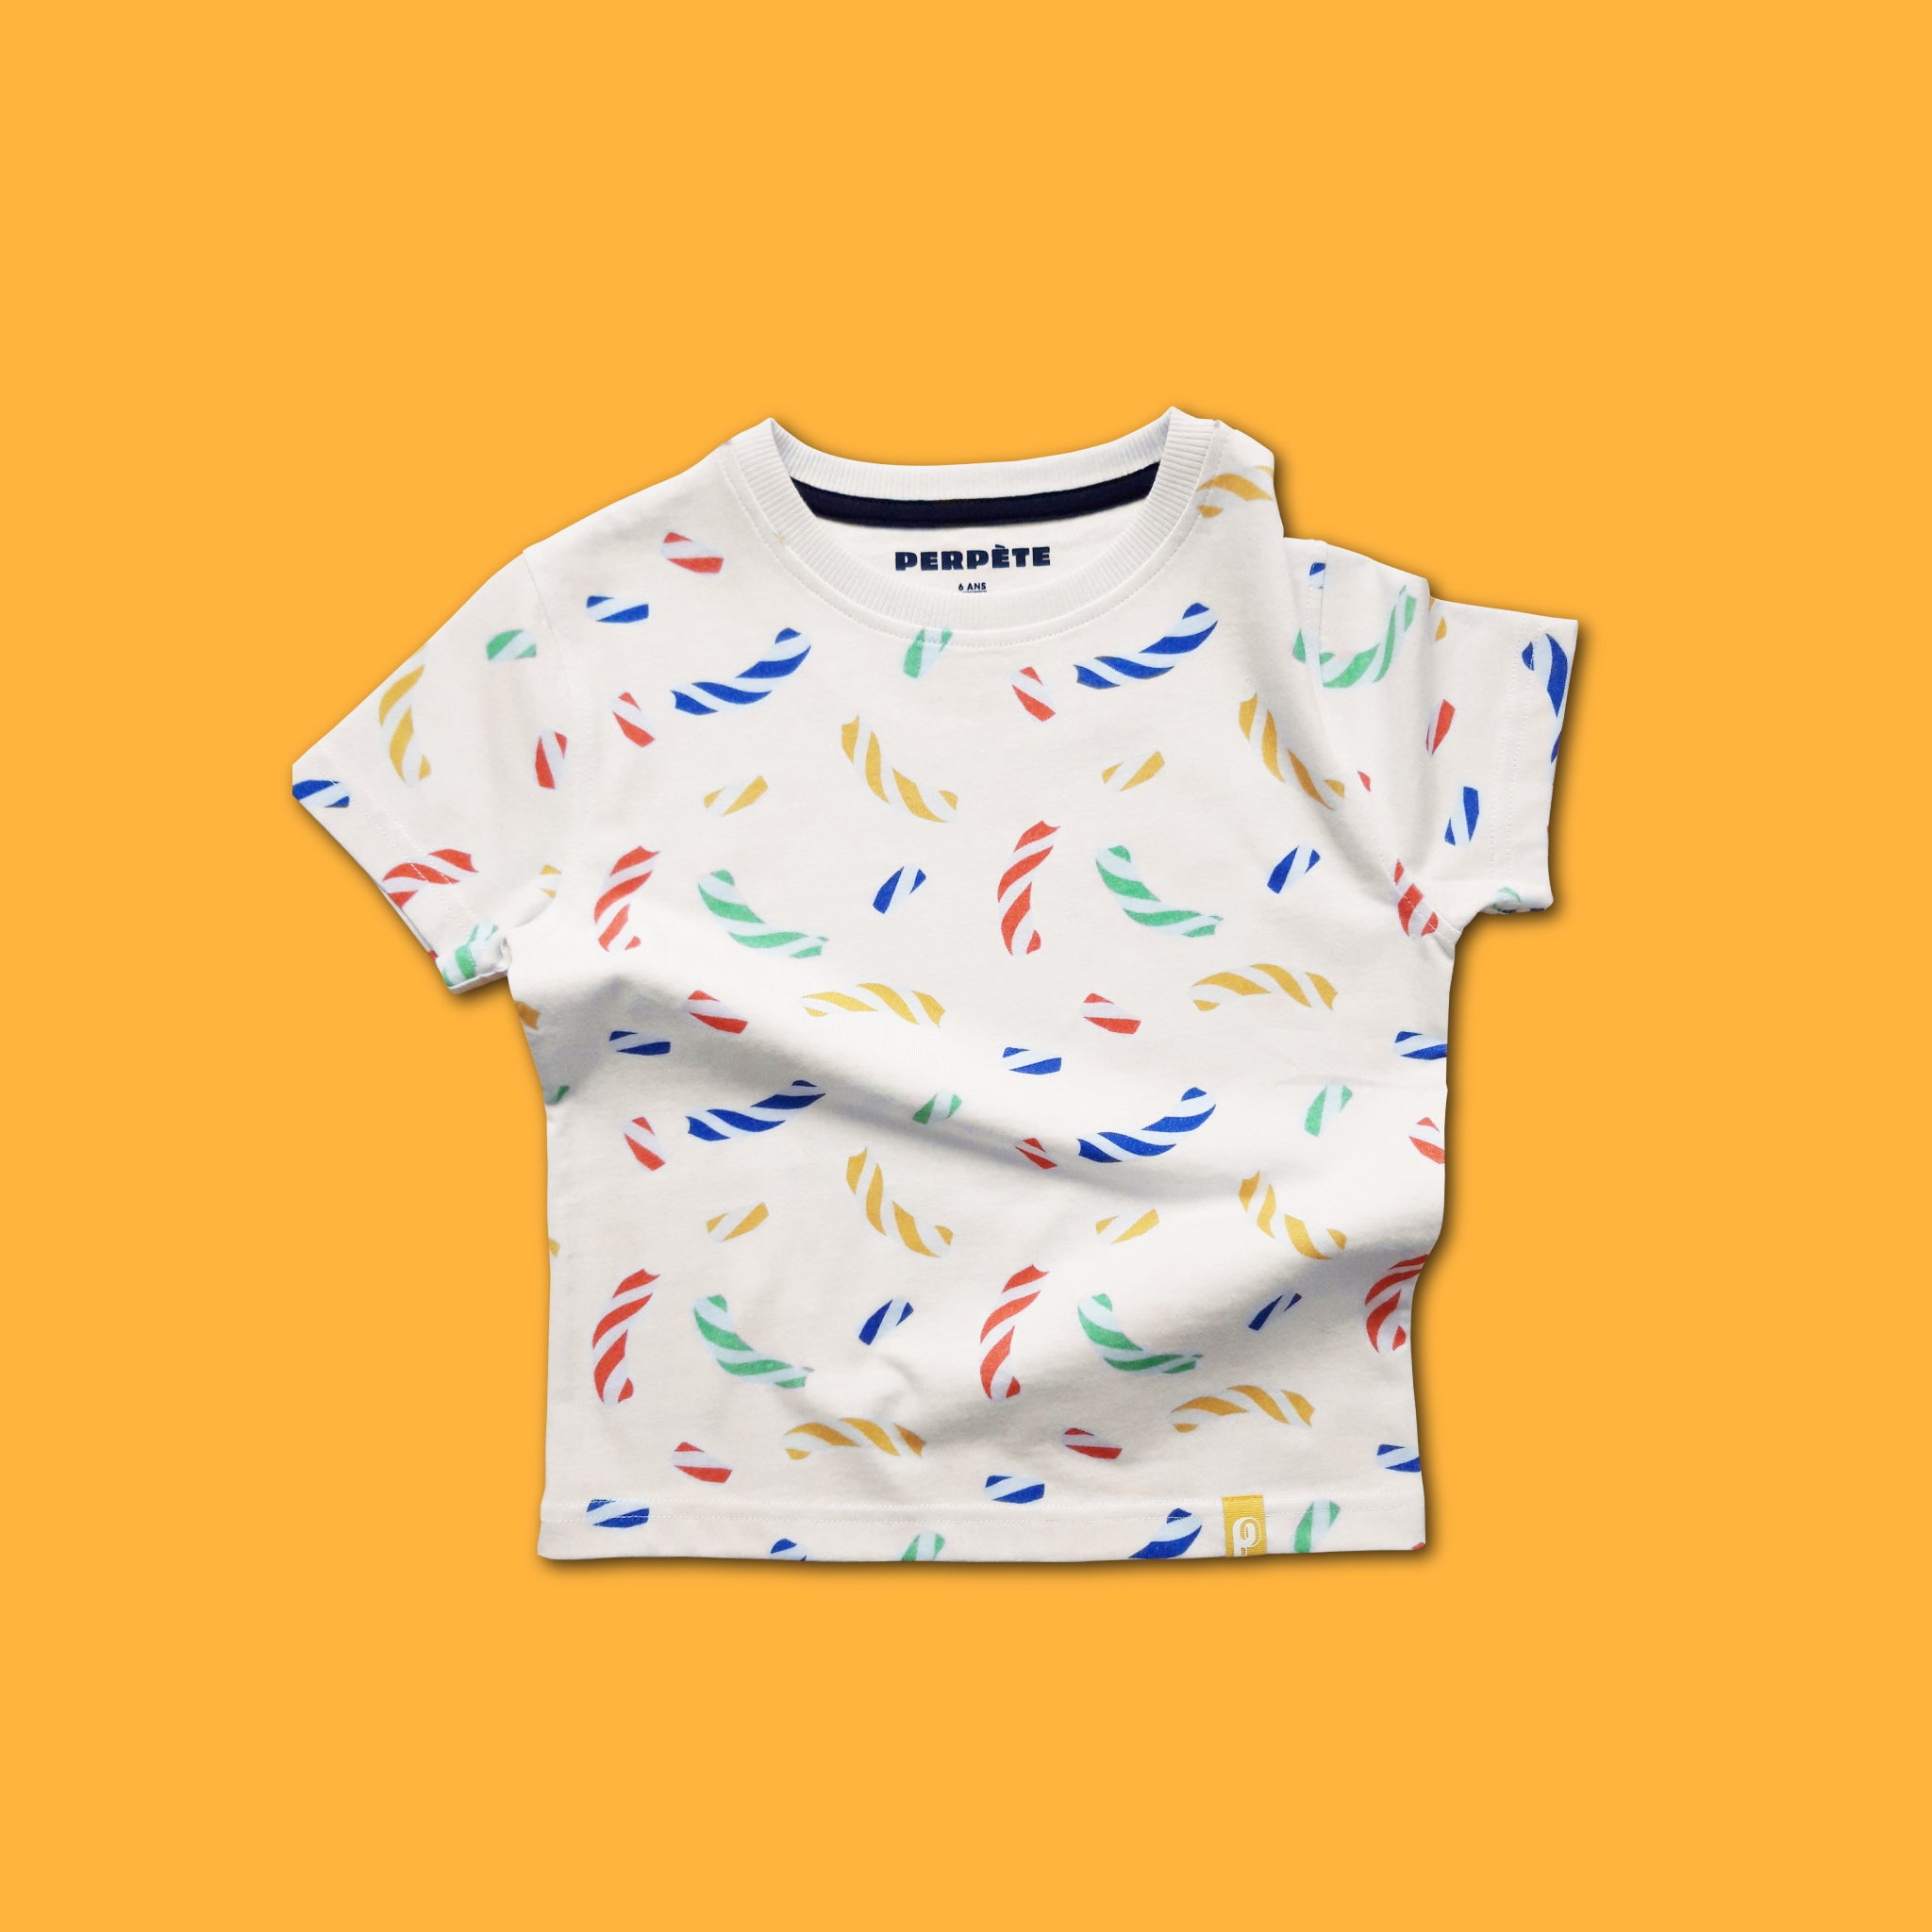 Tee-shirt enfant Sweety Perpète, imprimé bonbons, mixte, en coton bio